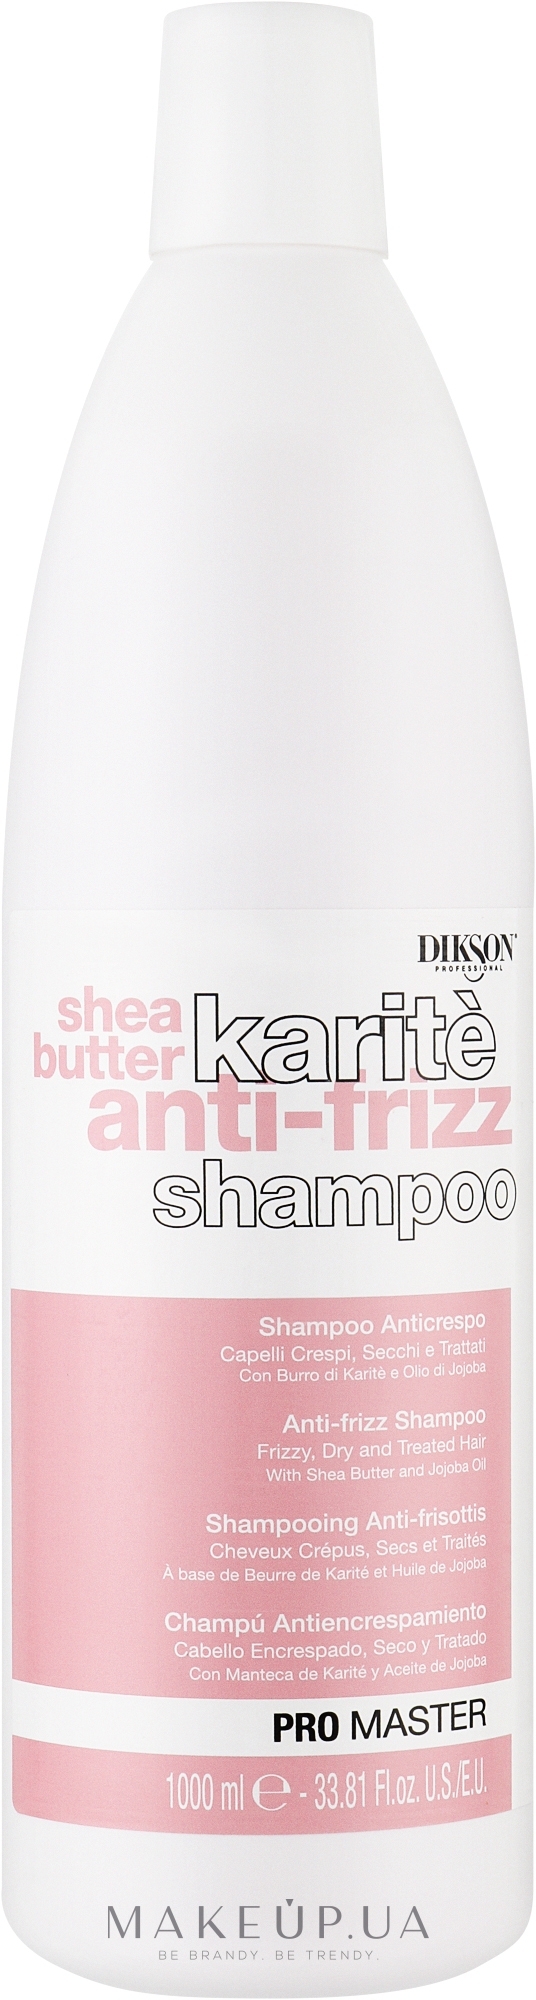 Шампунь для сухих и поврежденных волос - Dikson Shea Butter Karite Anti-Frizz Shampoo — фото 1000ml